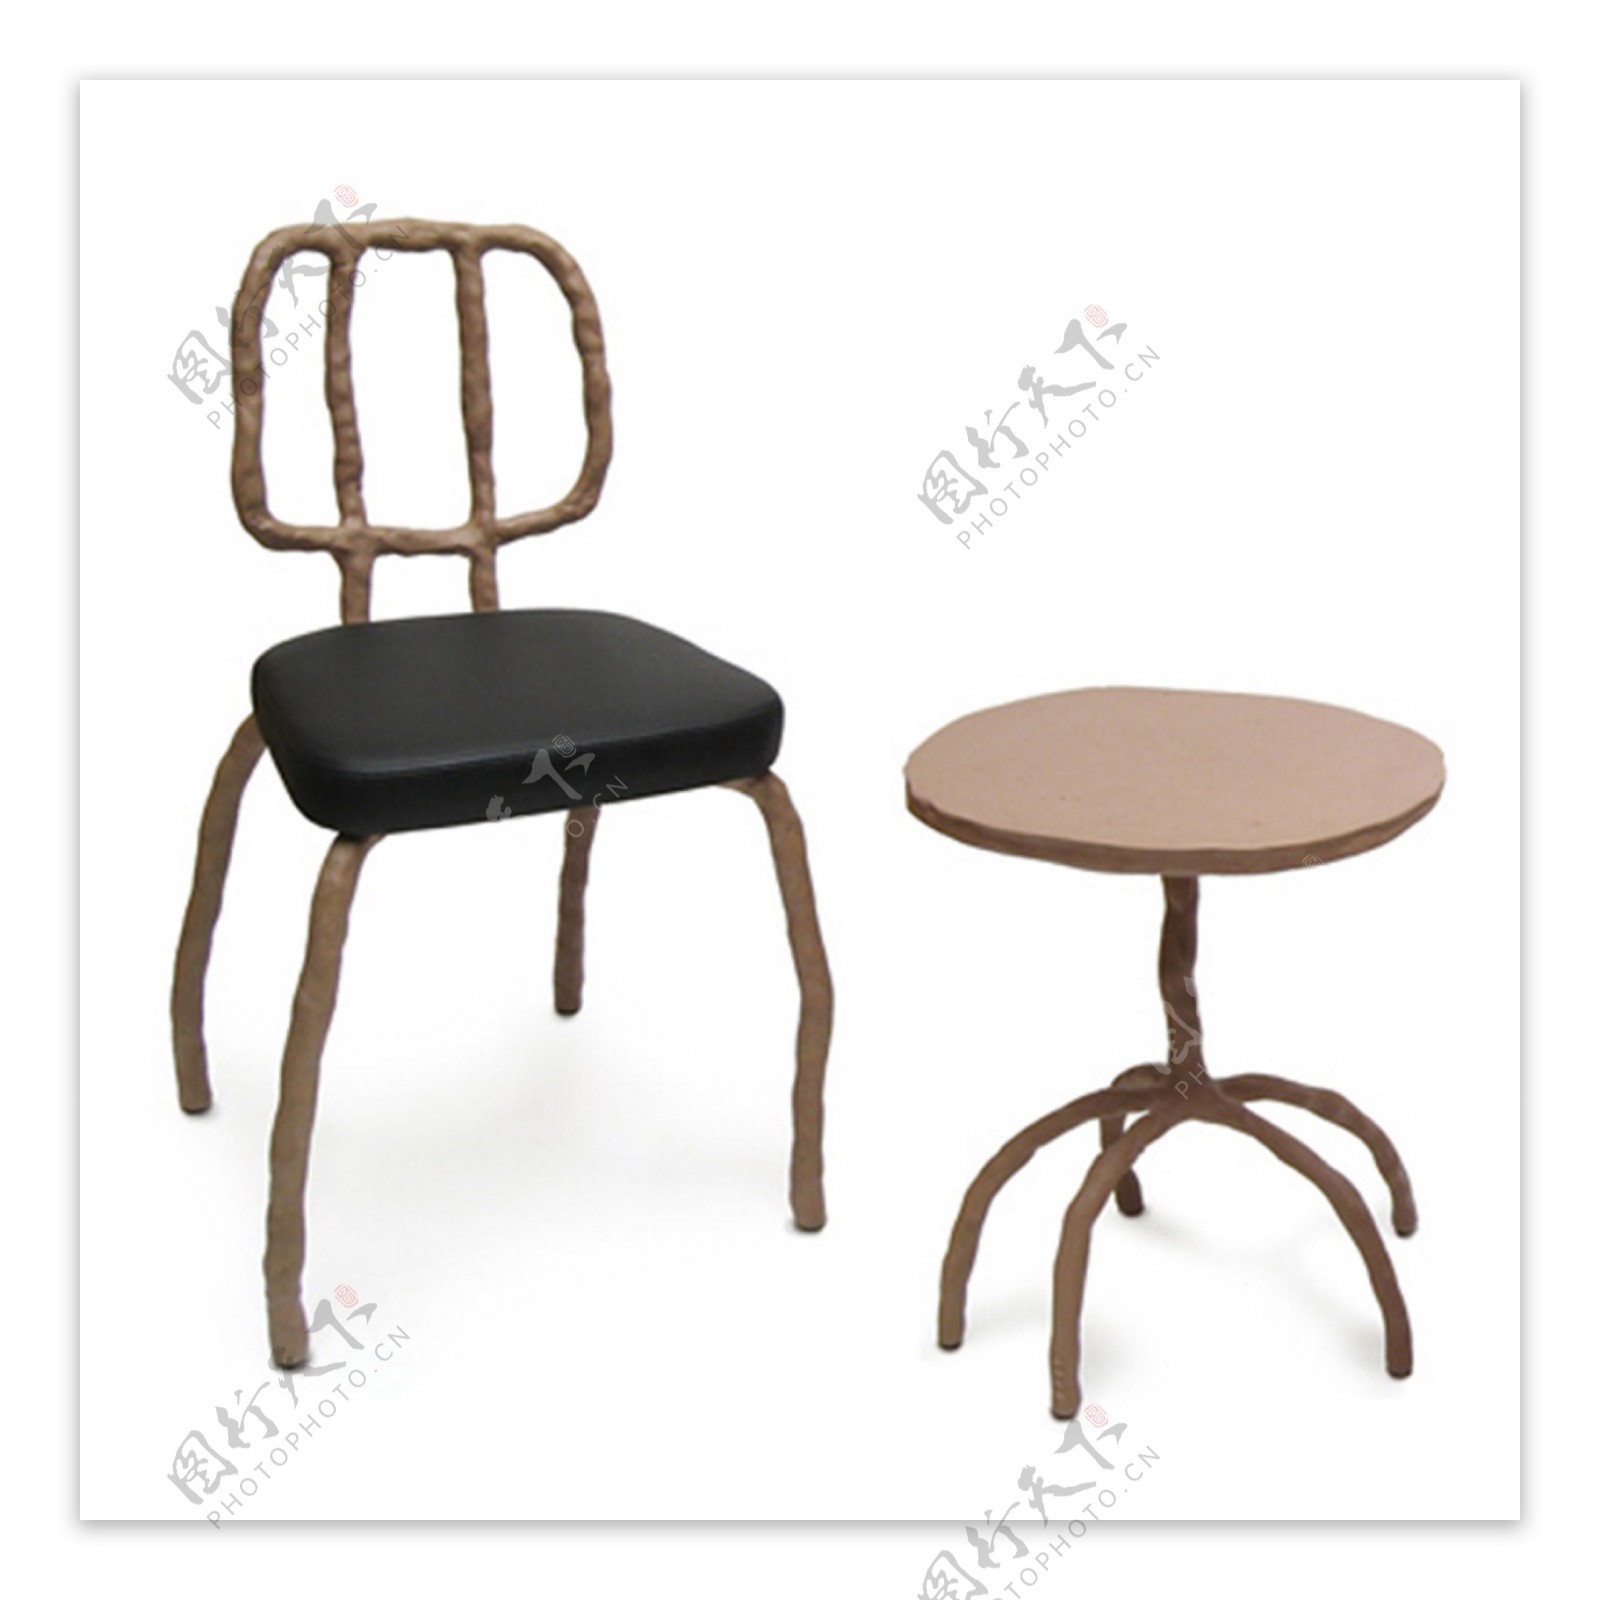 迥异的家具创意生活用品产品设计JPG